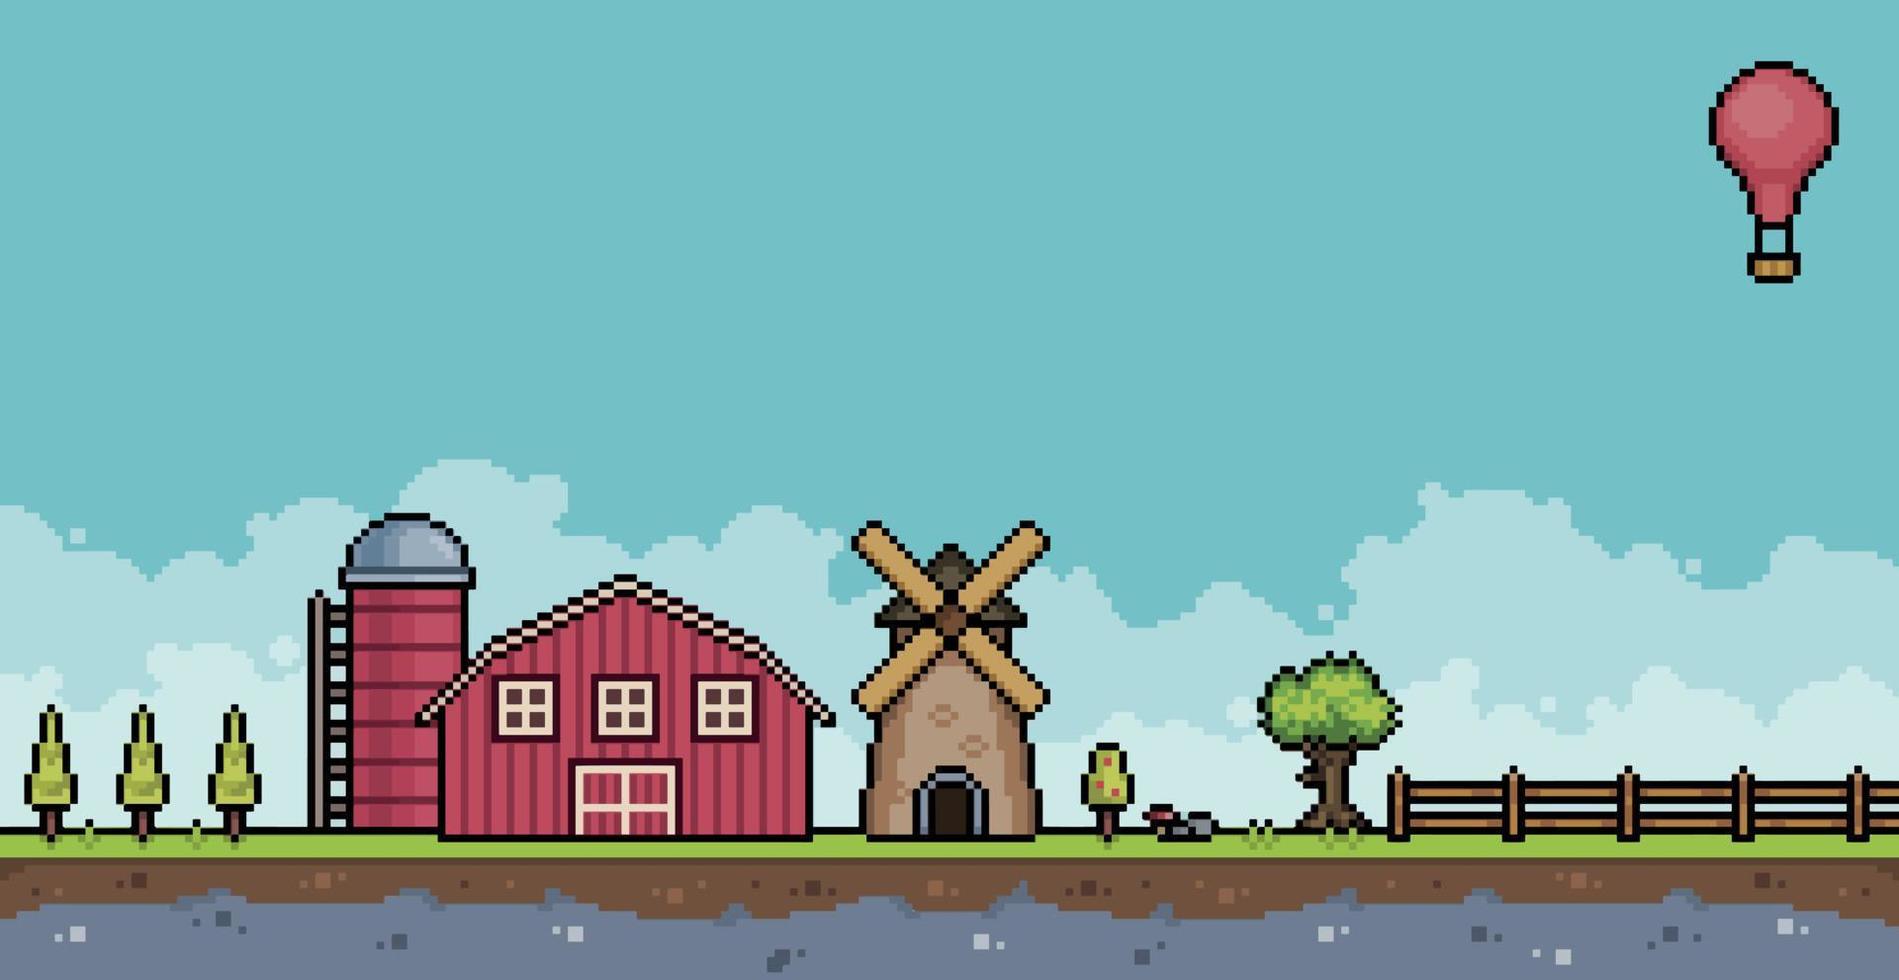 pixel kunst boerderij landschap met schuur, molen, schutting, bomen. 8 beetje spel achtergrond vector